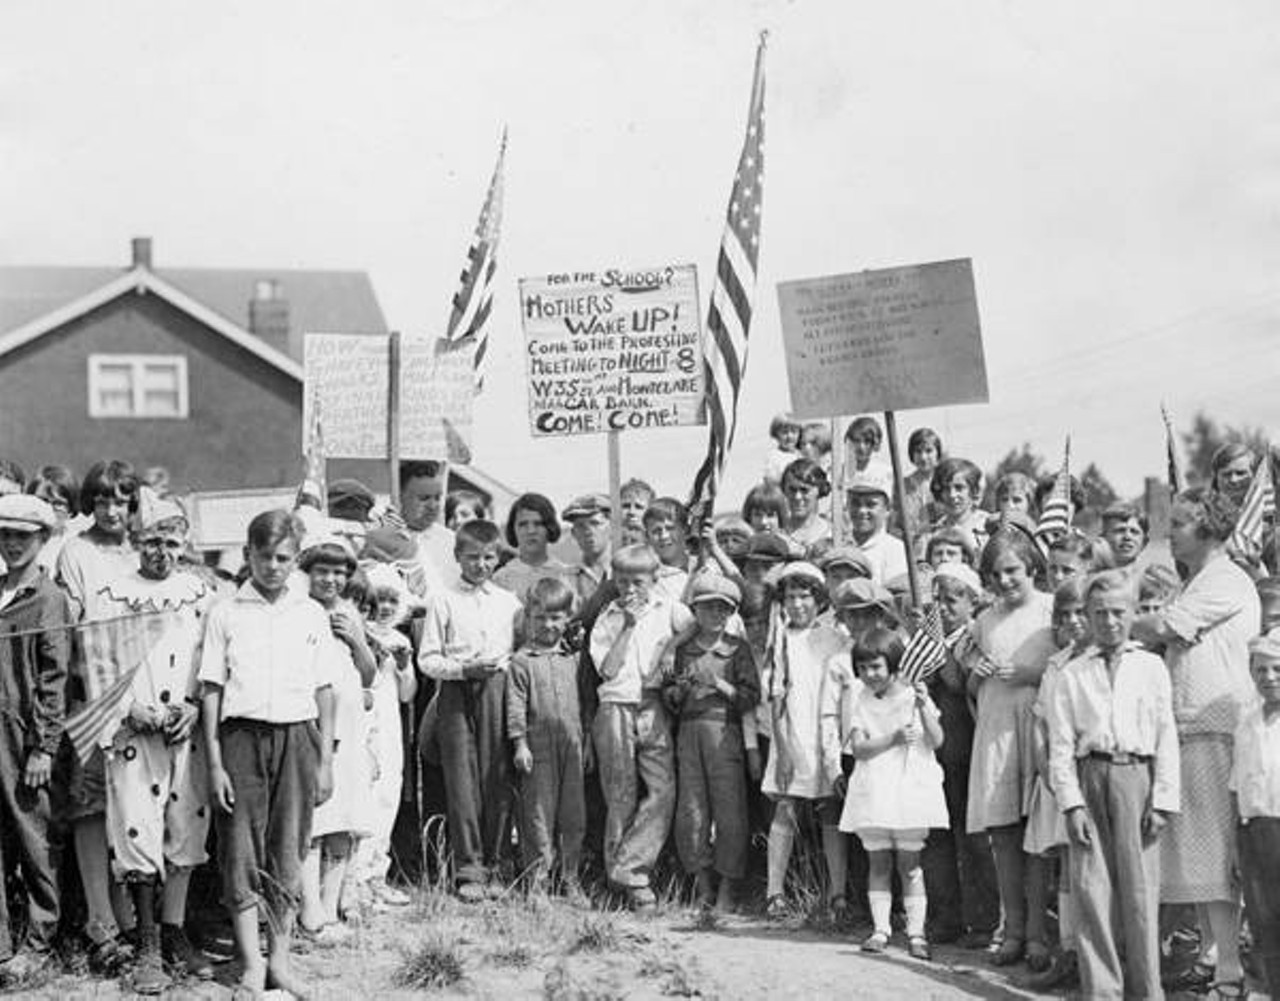  Demonstration, 1934 